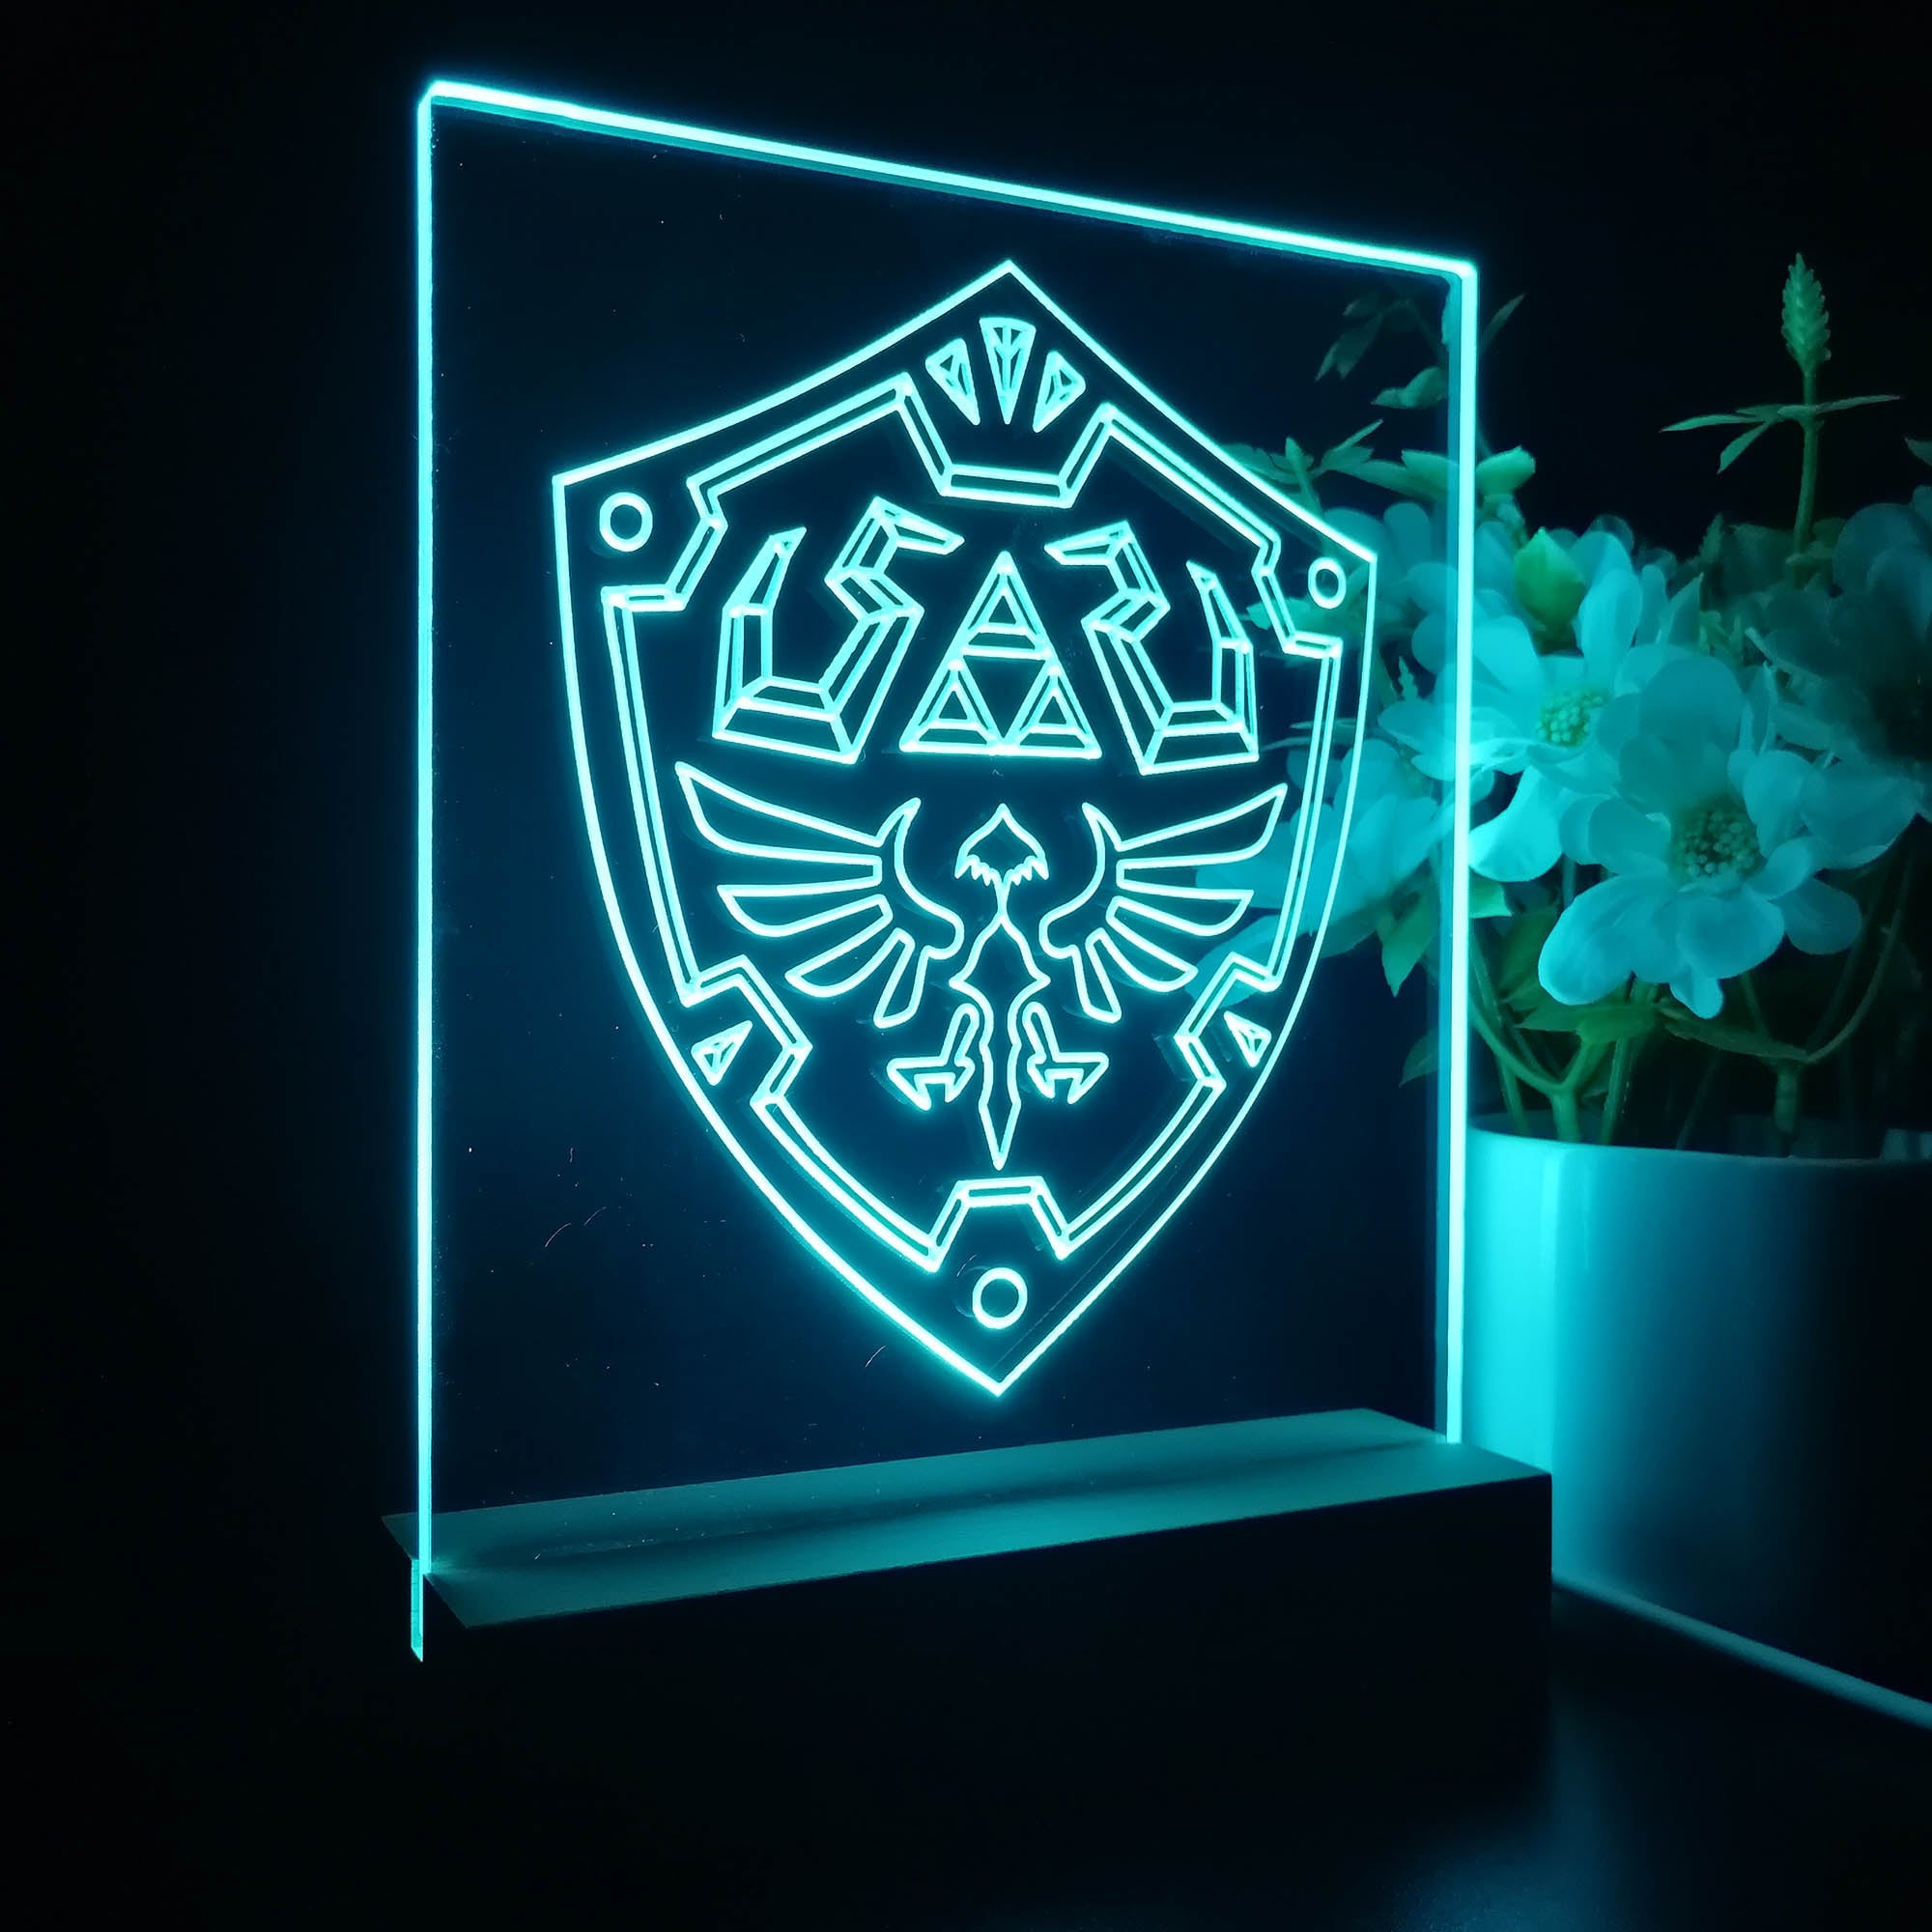 Zelda Night Light Table Top Lamp